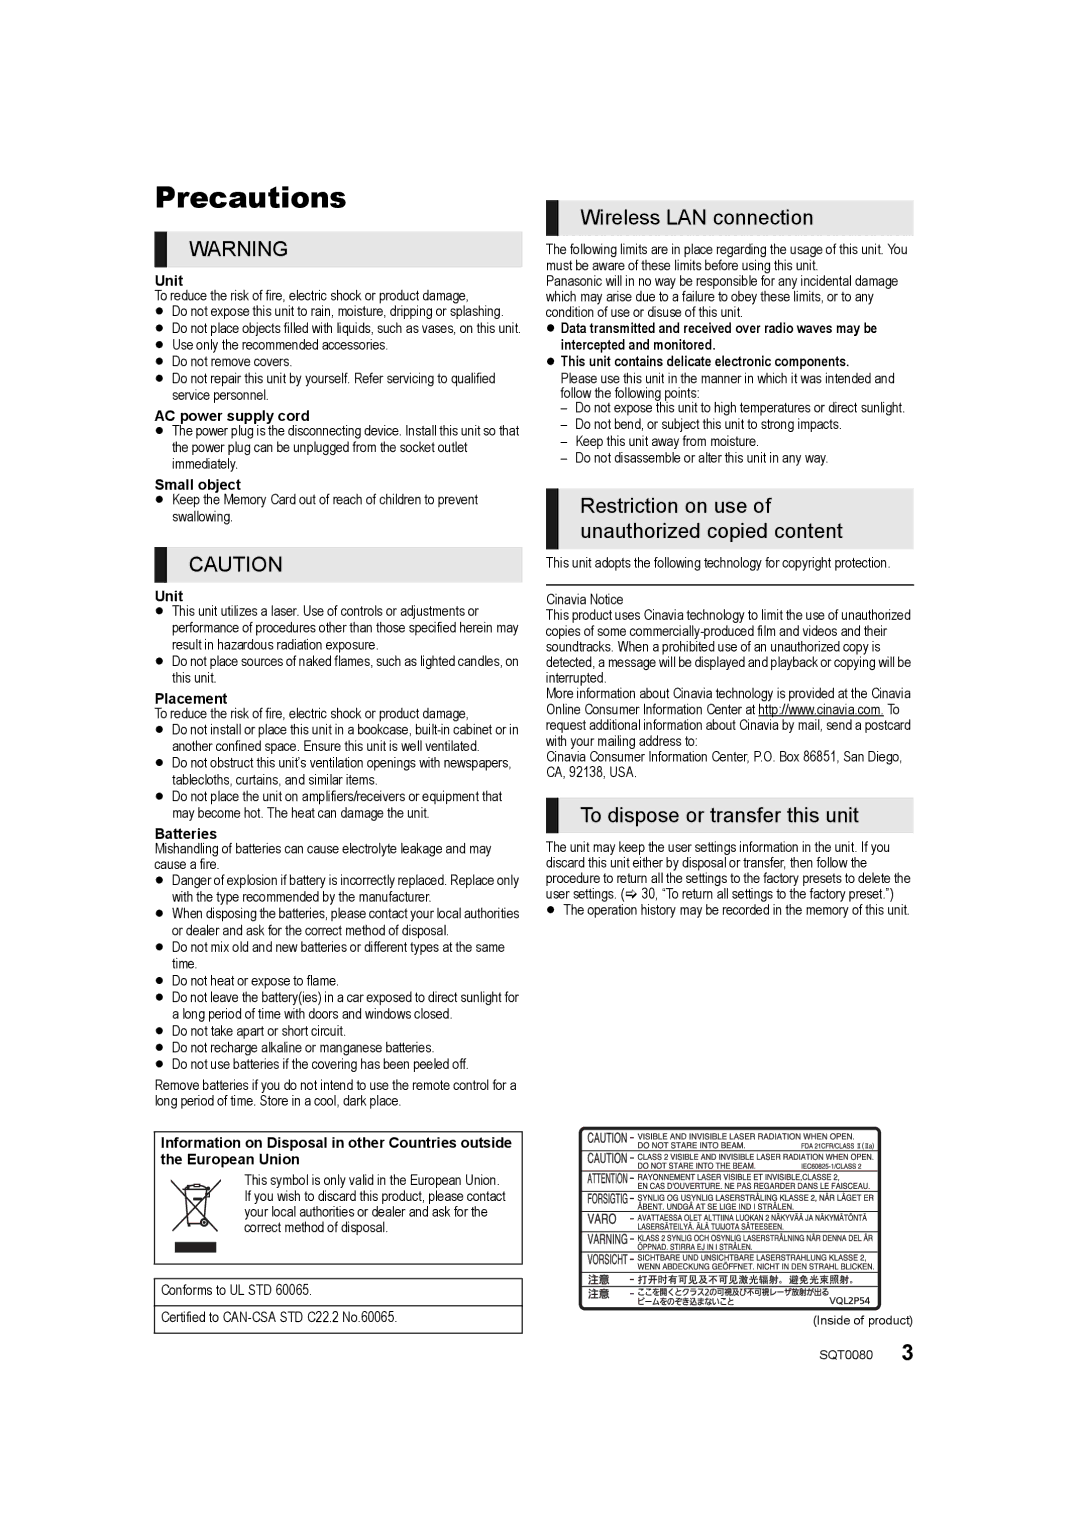 Panasonic DMP-BDT361, DMP-BDT460, DMP-BDT360 owner manual Precautions, Unit 